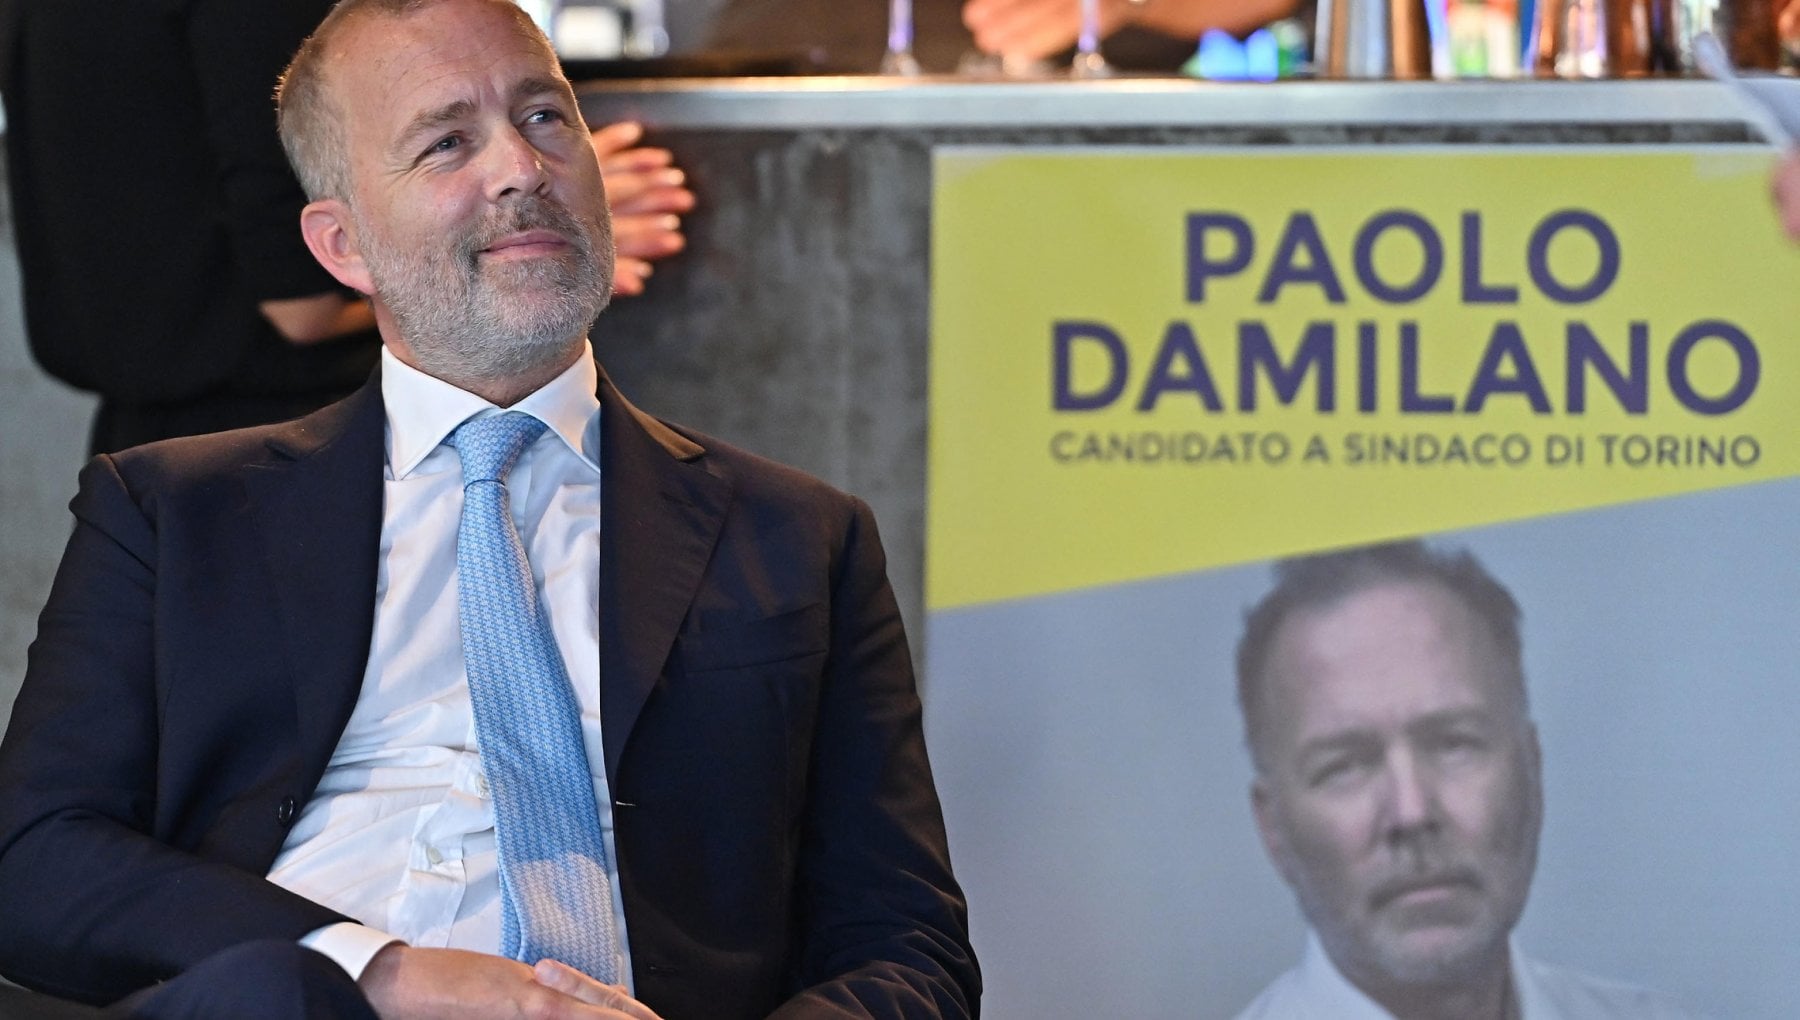 Paolo Damilano lascia la destra: "Troppe liti e derive populiste. Non ci sto"